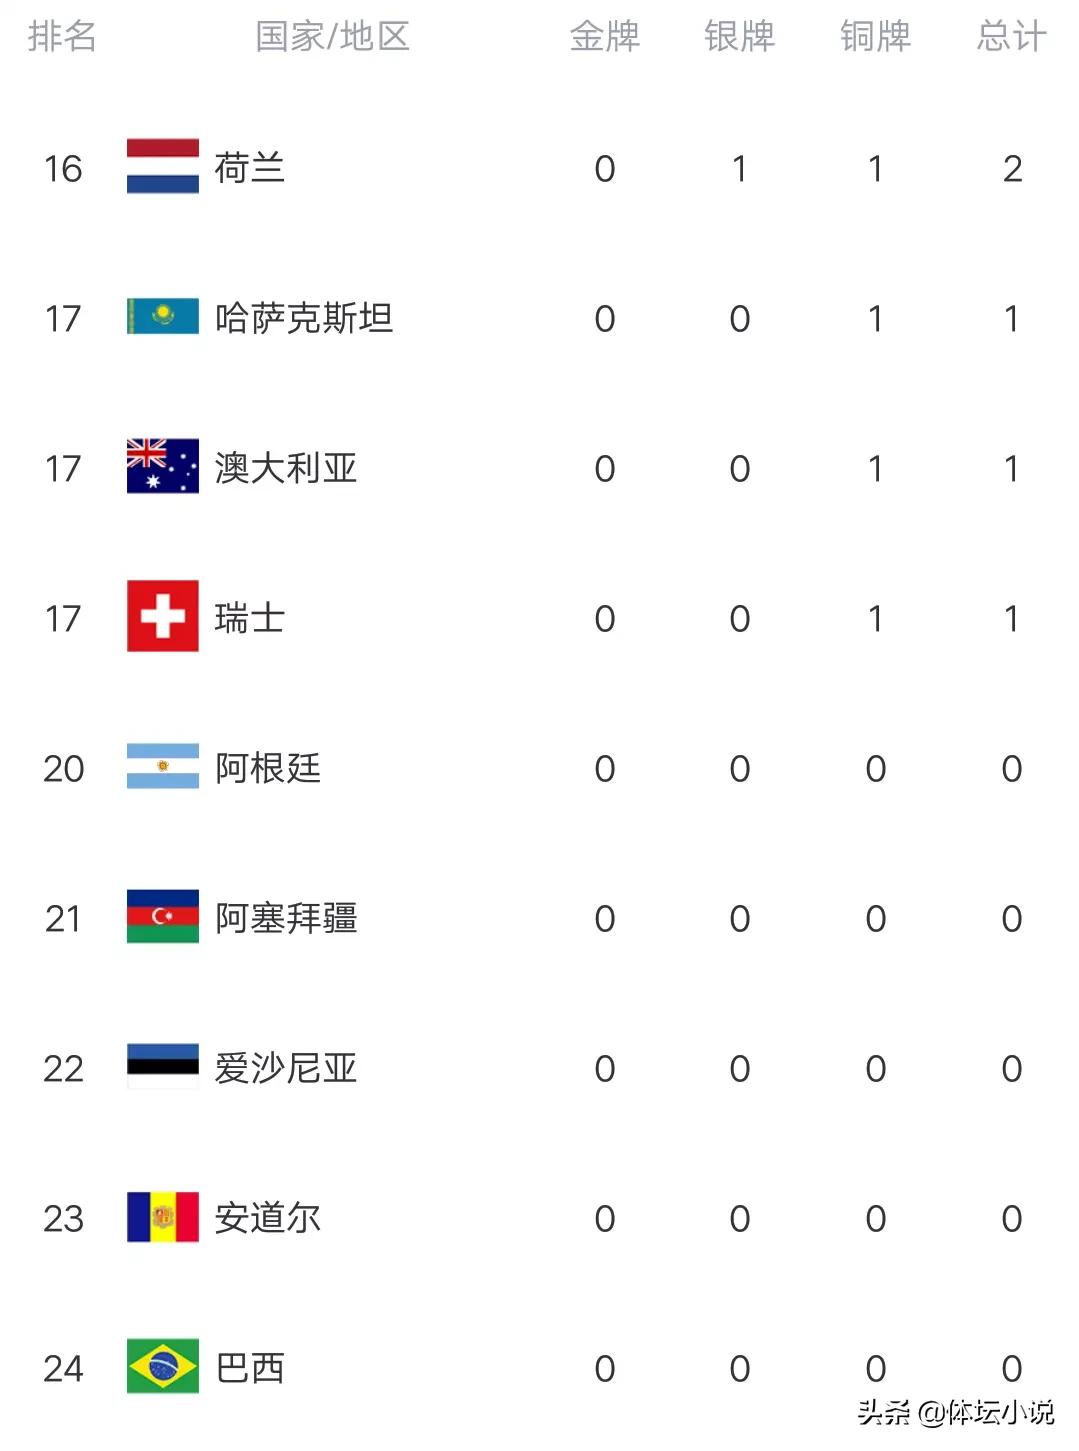 冬残奥最新金牌榜：中国突破8金，乌克兰日进2金，韩国仍未登榜